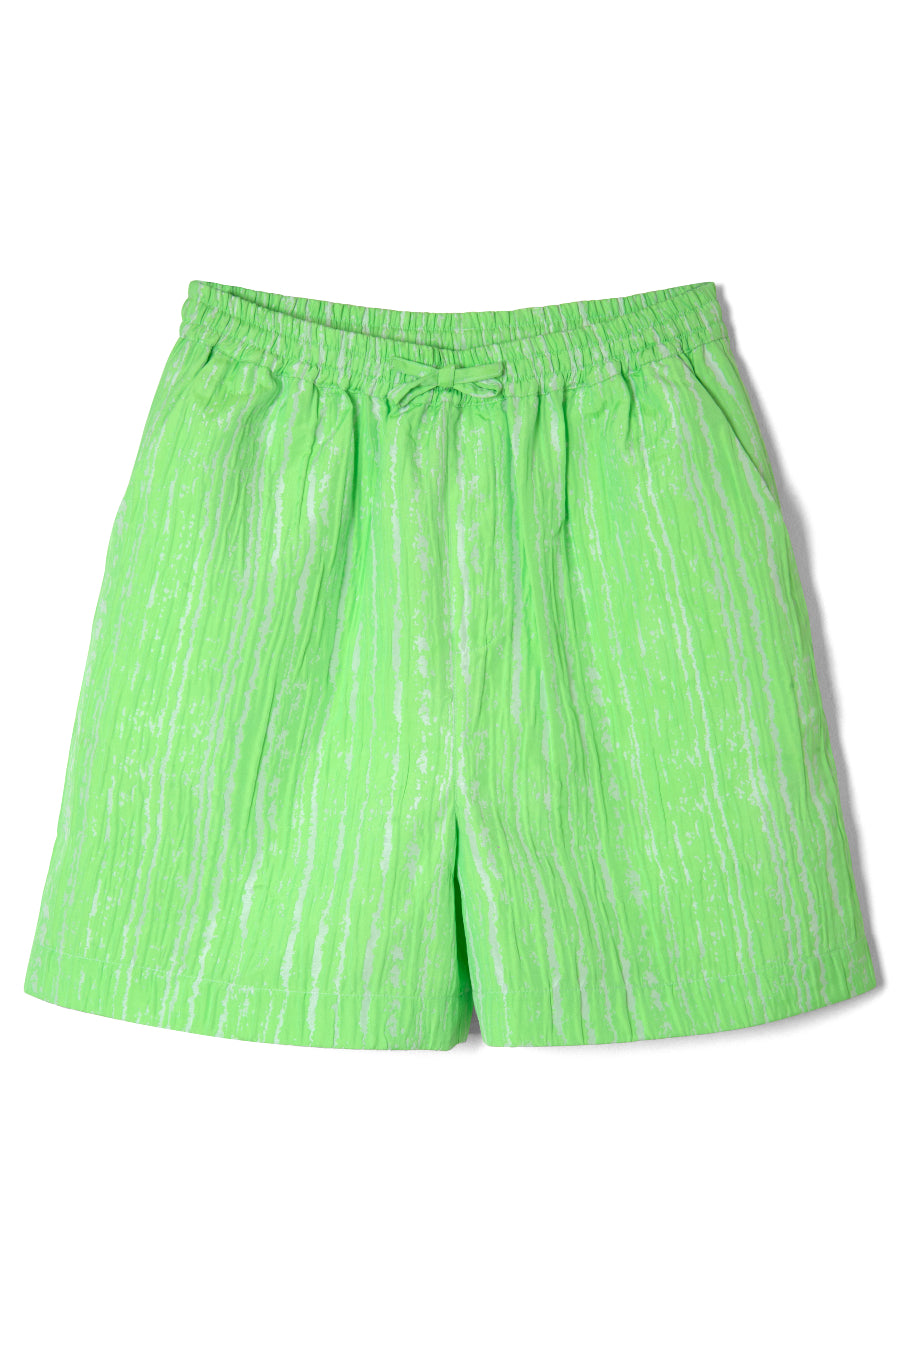 textured woven jacquard green short